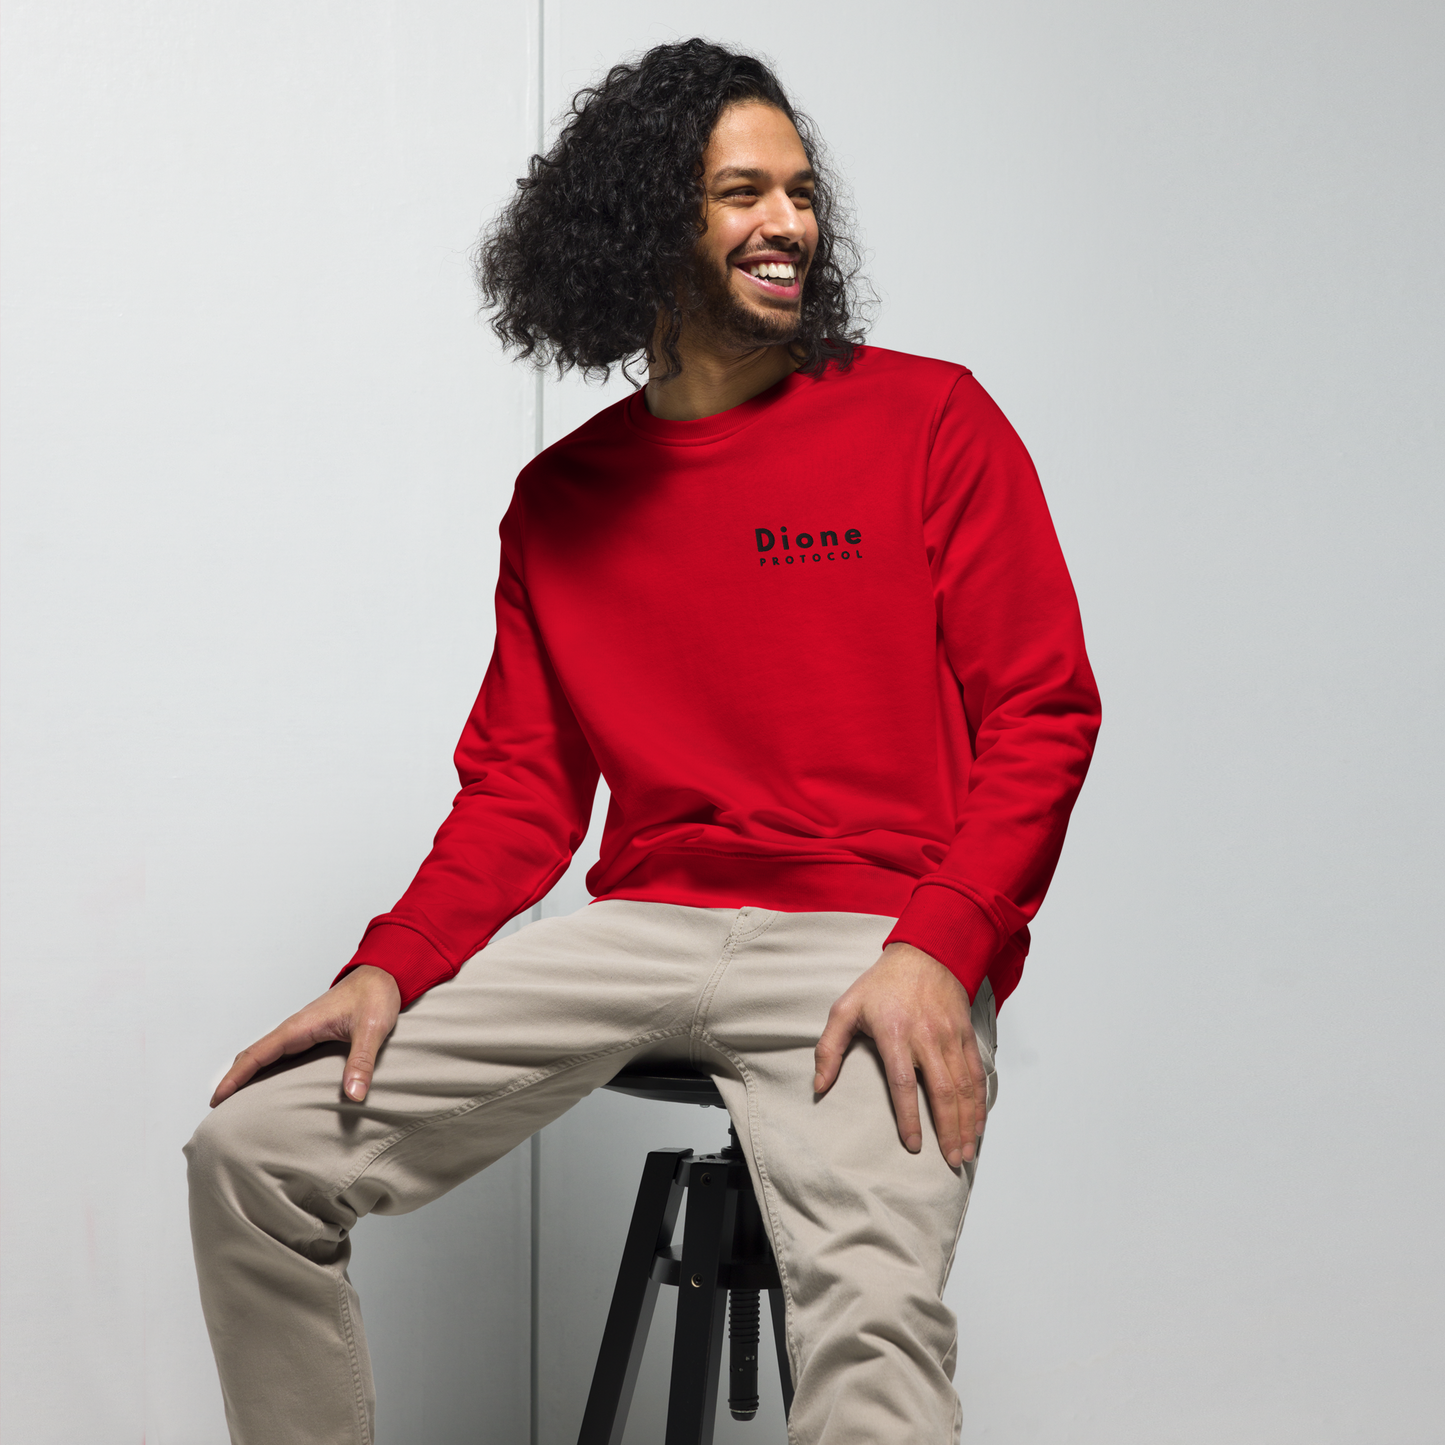 Sweatshirt - Dione V1.0 - Red - Standard